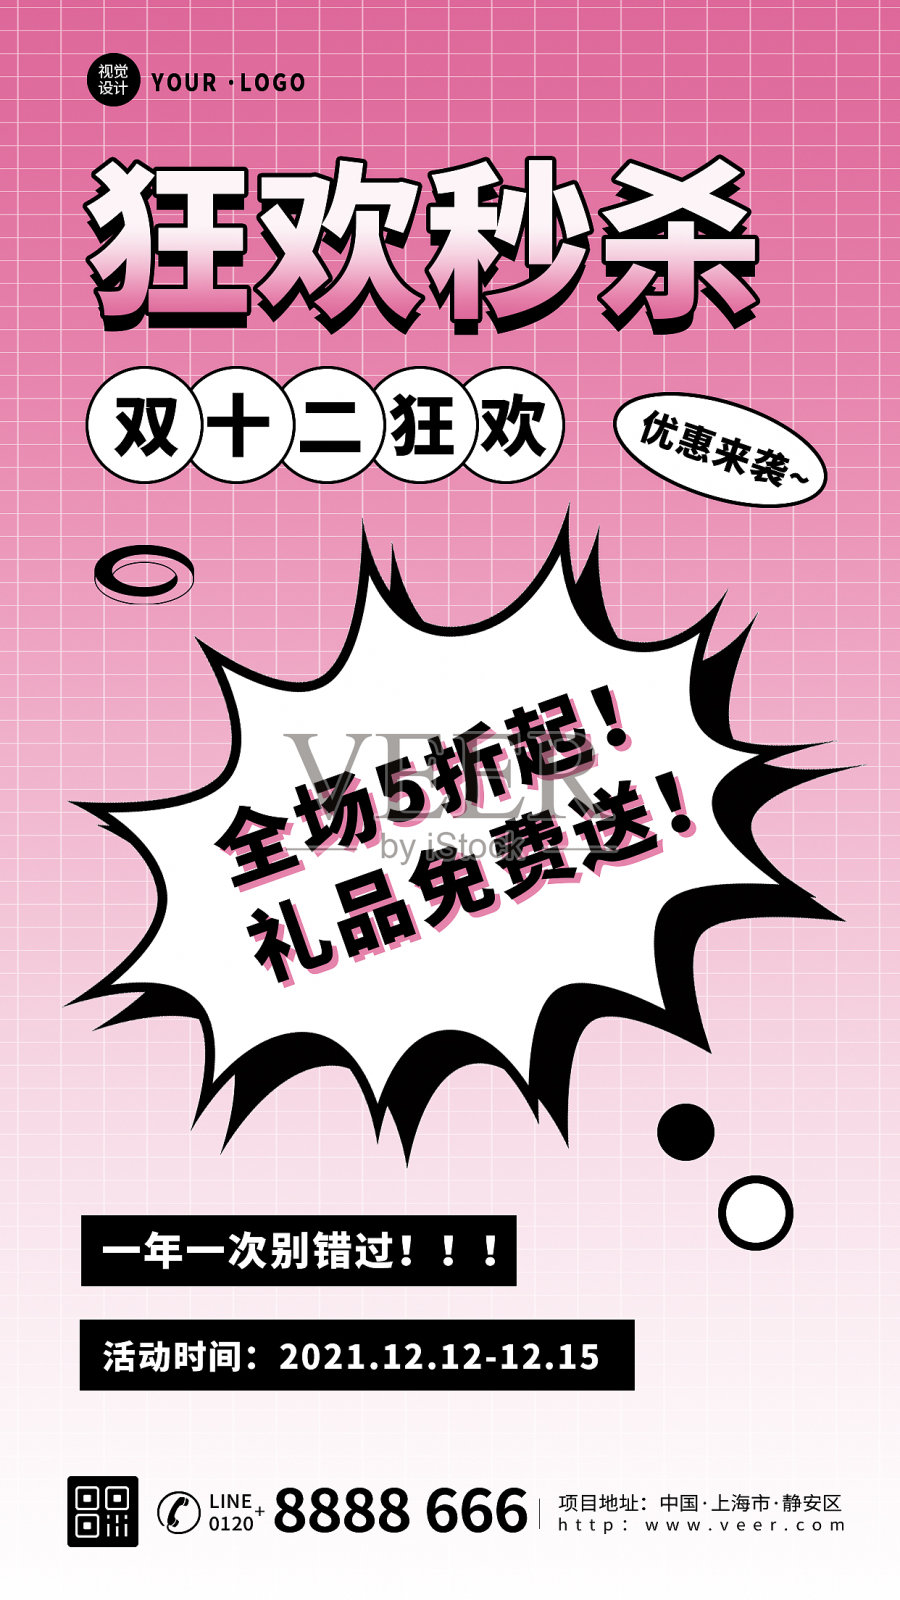 粉色大气酸性双十二狂欢促销活动宣传手机海报设计模板素材